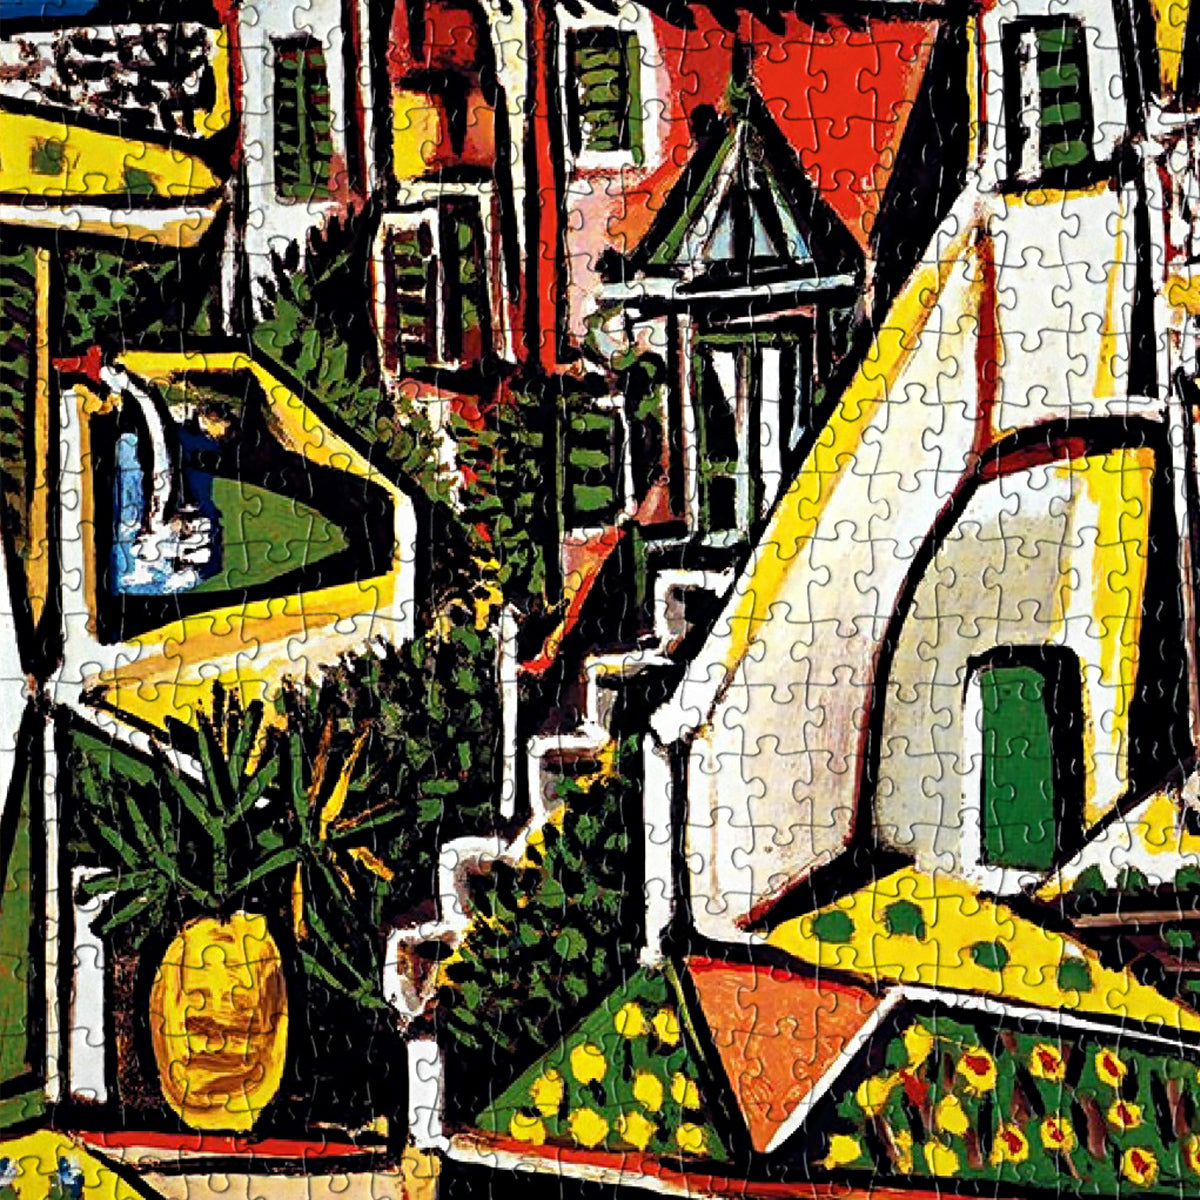 Puzzle 1000 pièces - Paysage méditerrannéen, de Picasso